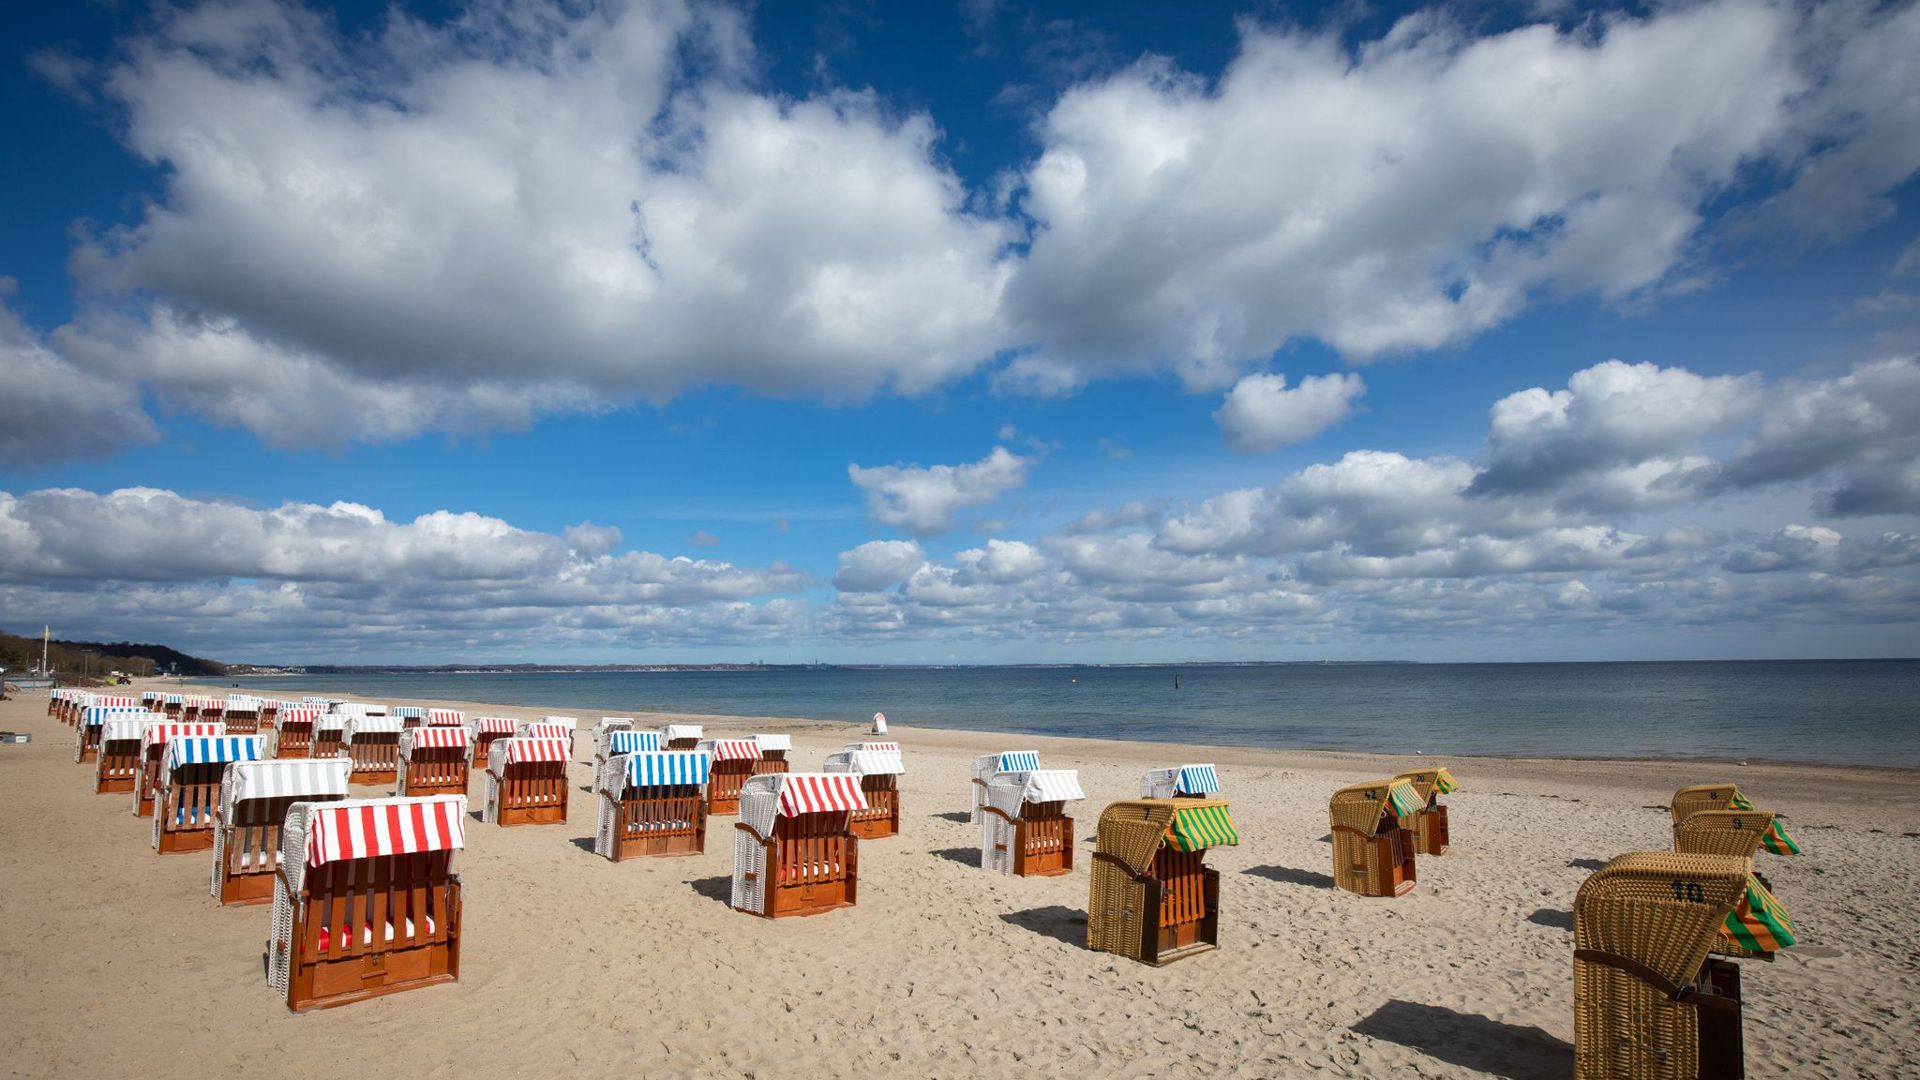 Geschlossene Strandkörbe stehen auf einem fast menschenleeren Strand an der Ostsee.